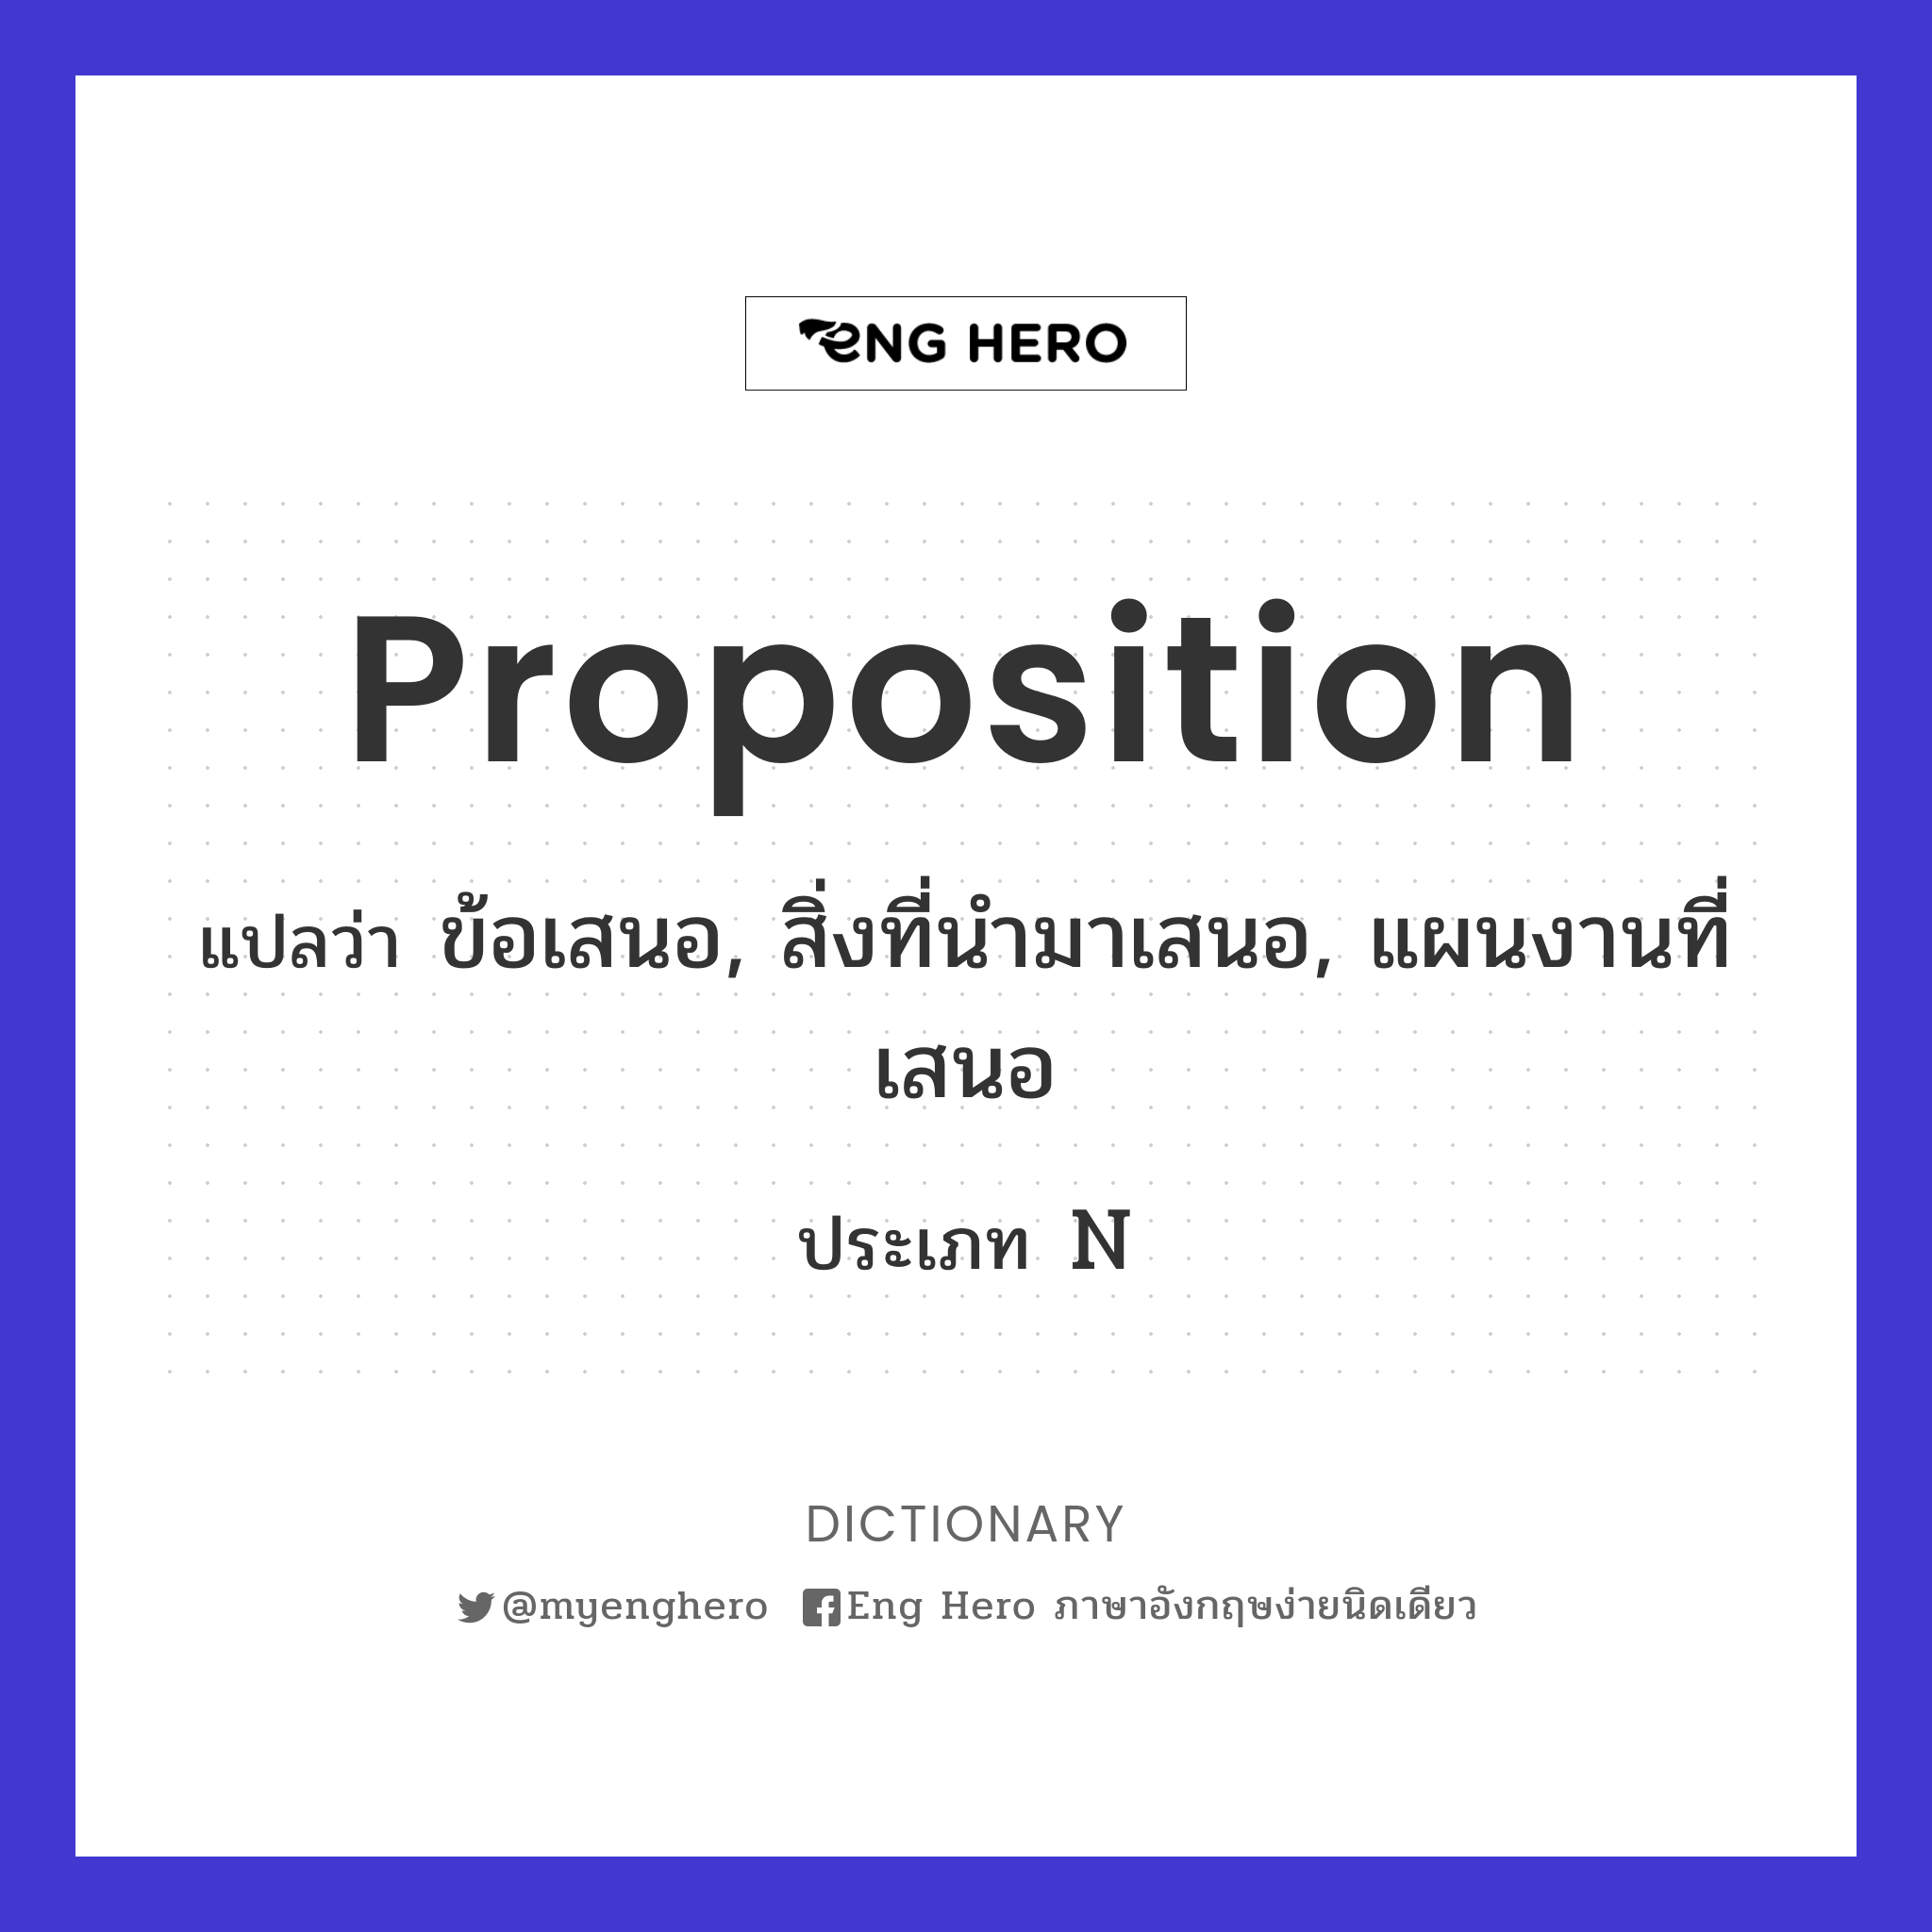 proposition